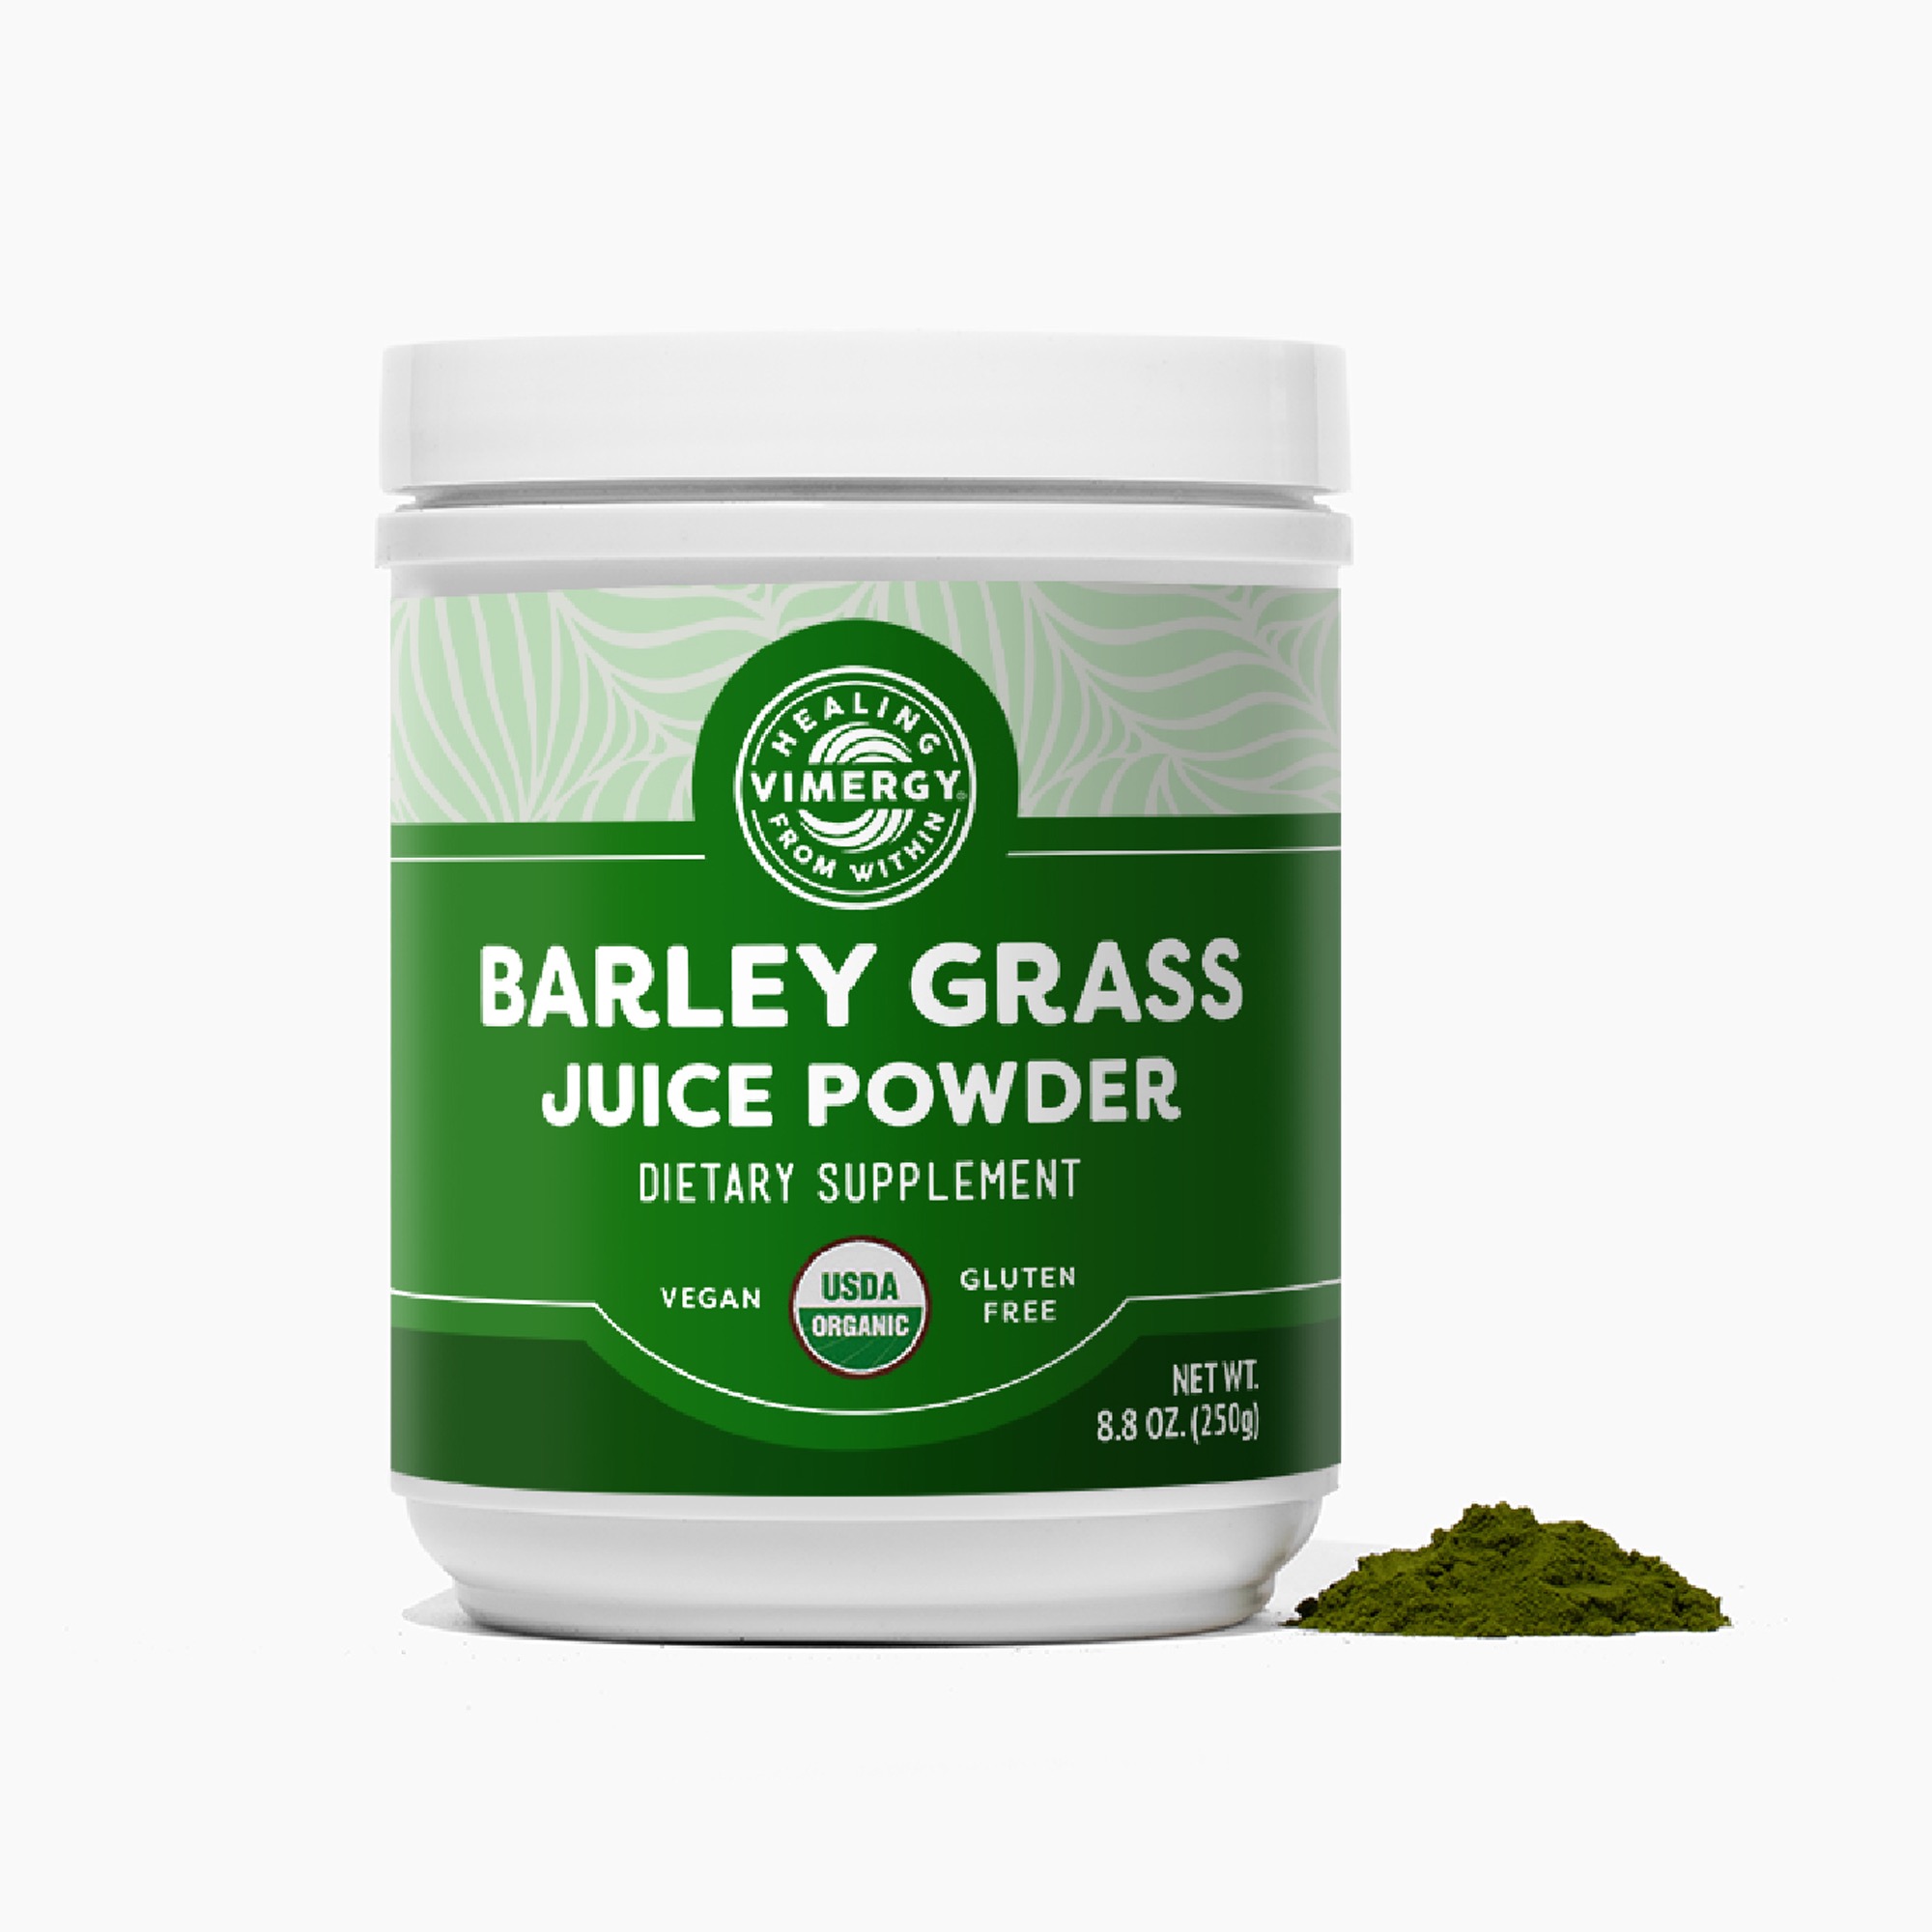 Gerstengrassaft (Barley Grass) Pulver von Vimergy.